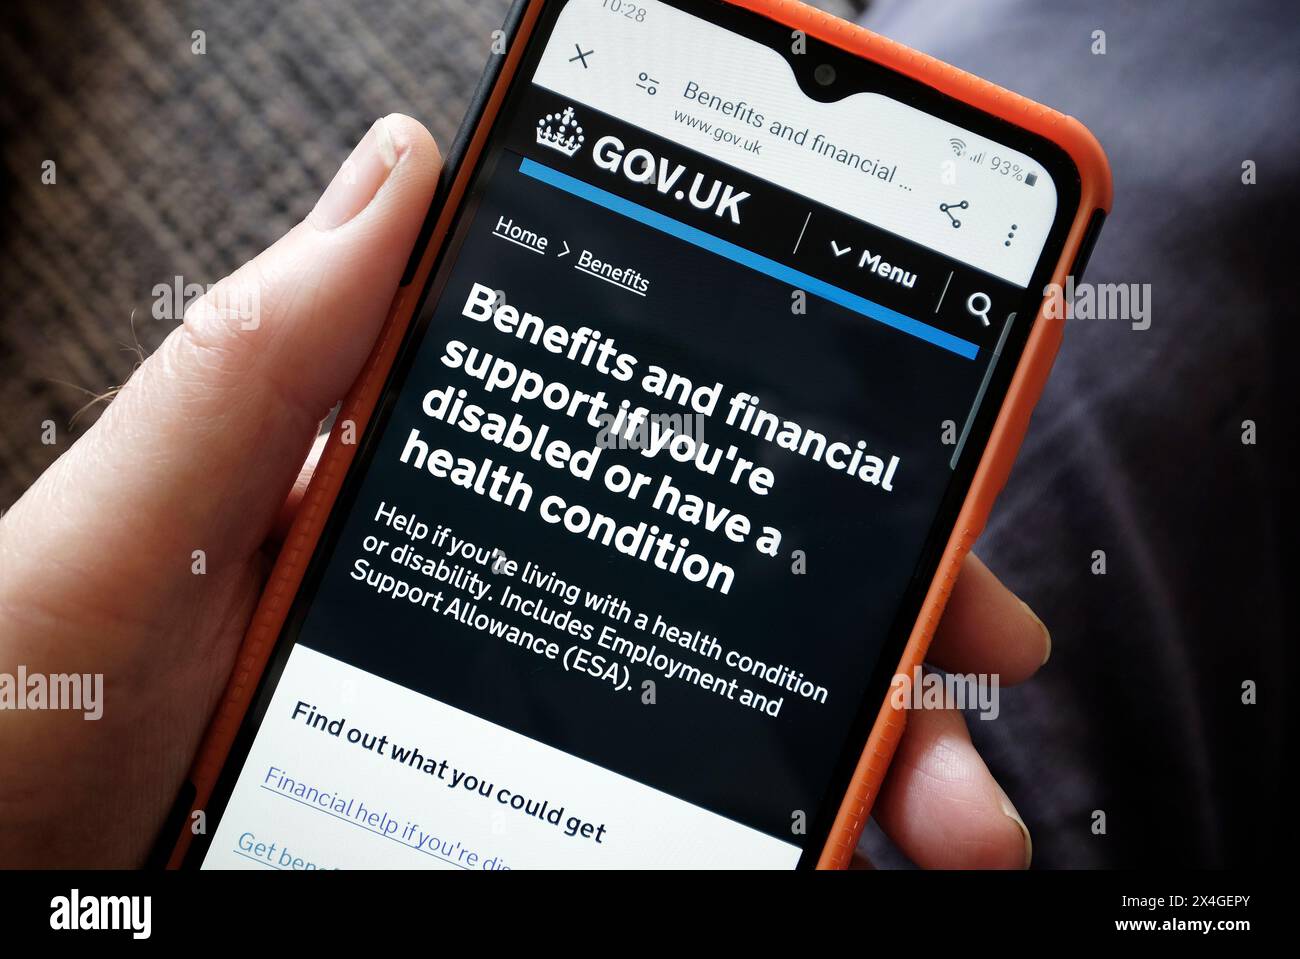 gov.uk, Homepage für Leistungen und finanzielle Unterstützung der britischen Regierung auf dem Bildschirm des Mobiltelefons Stockfoto